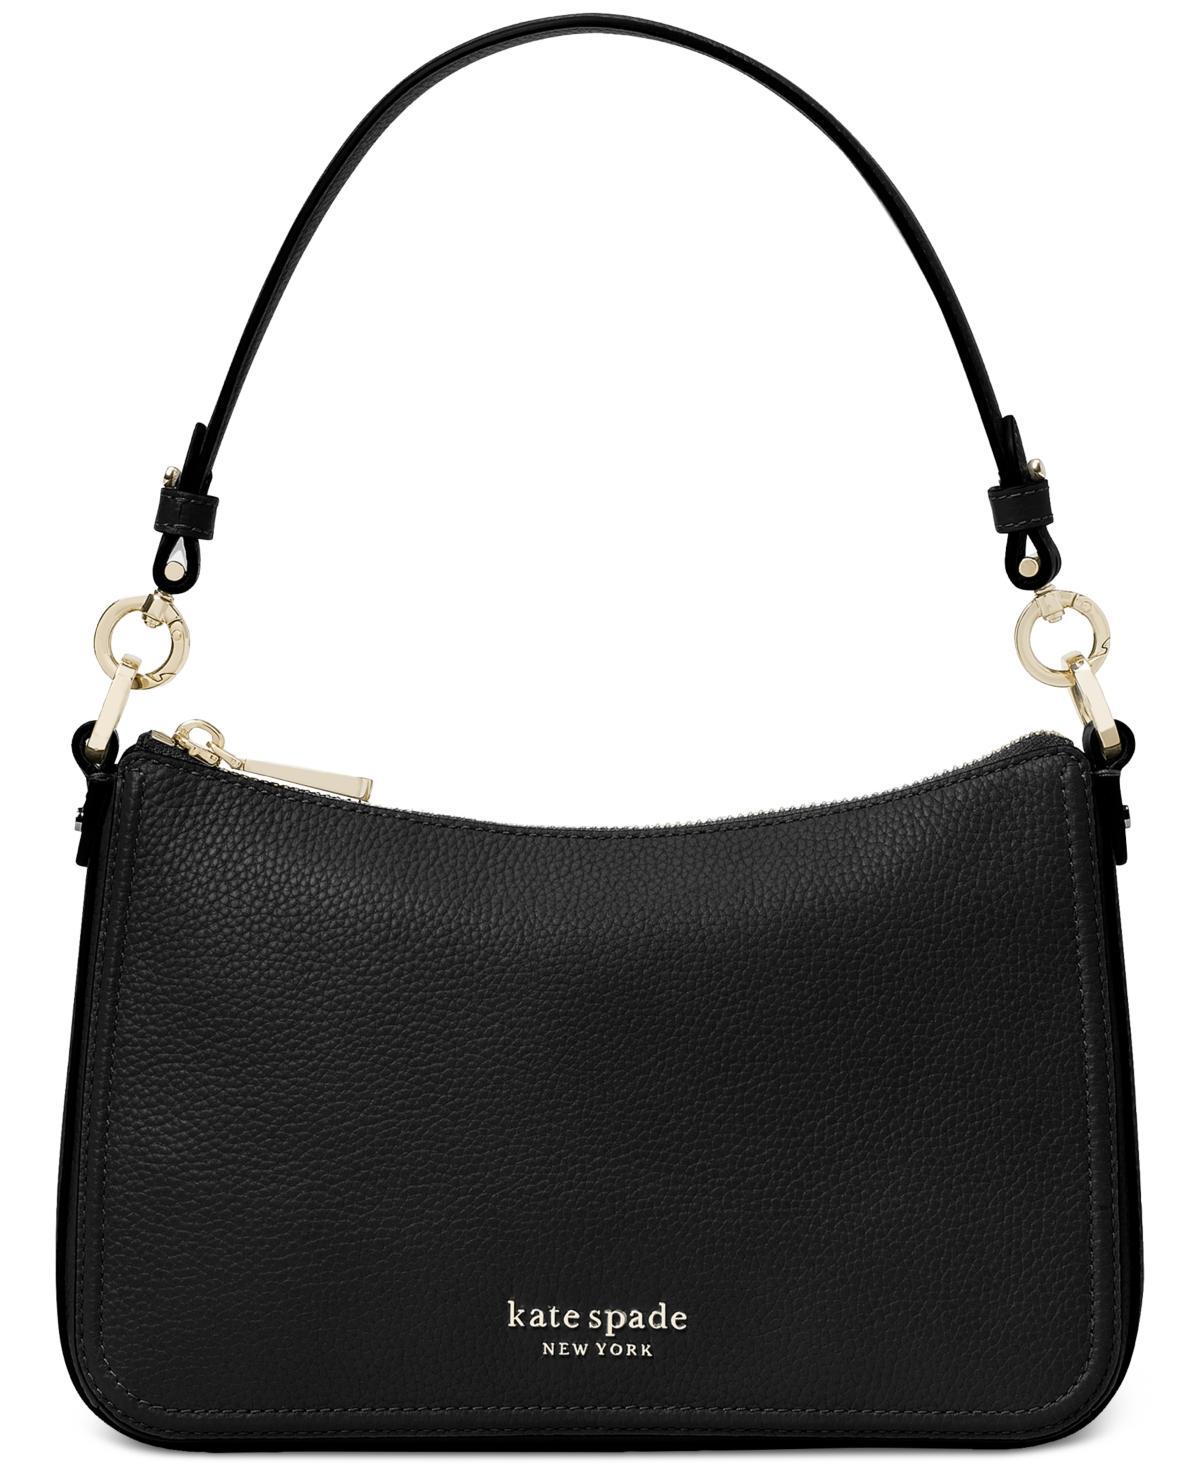 kate spade new york hudson pebbled leather medium shoulder bag Product Image